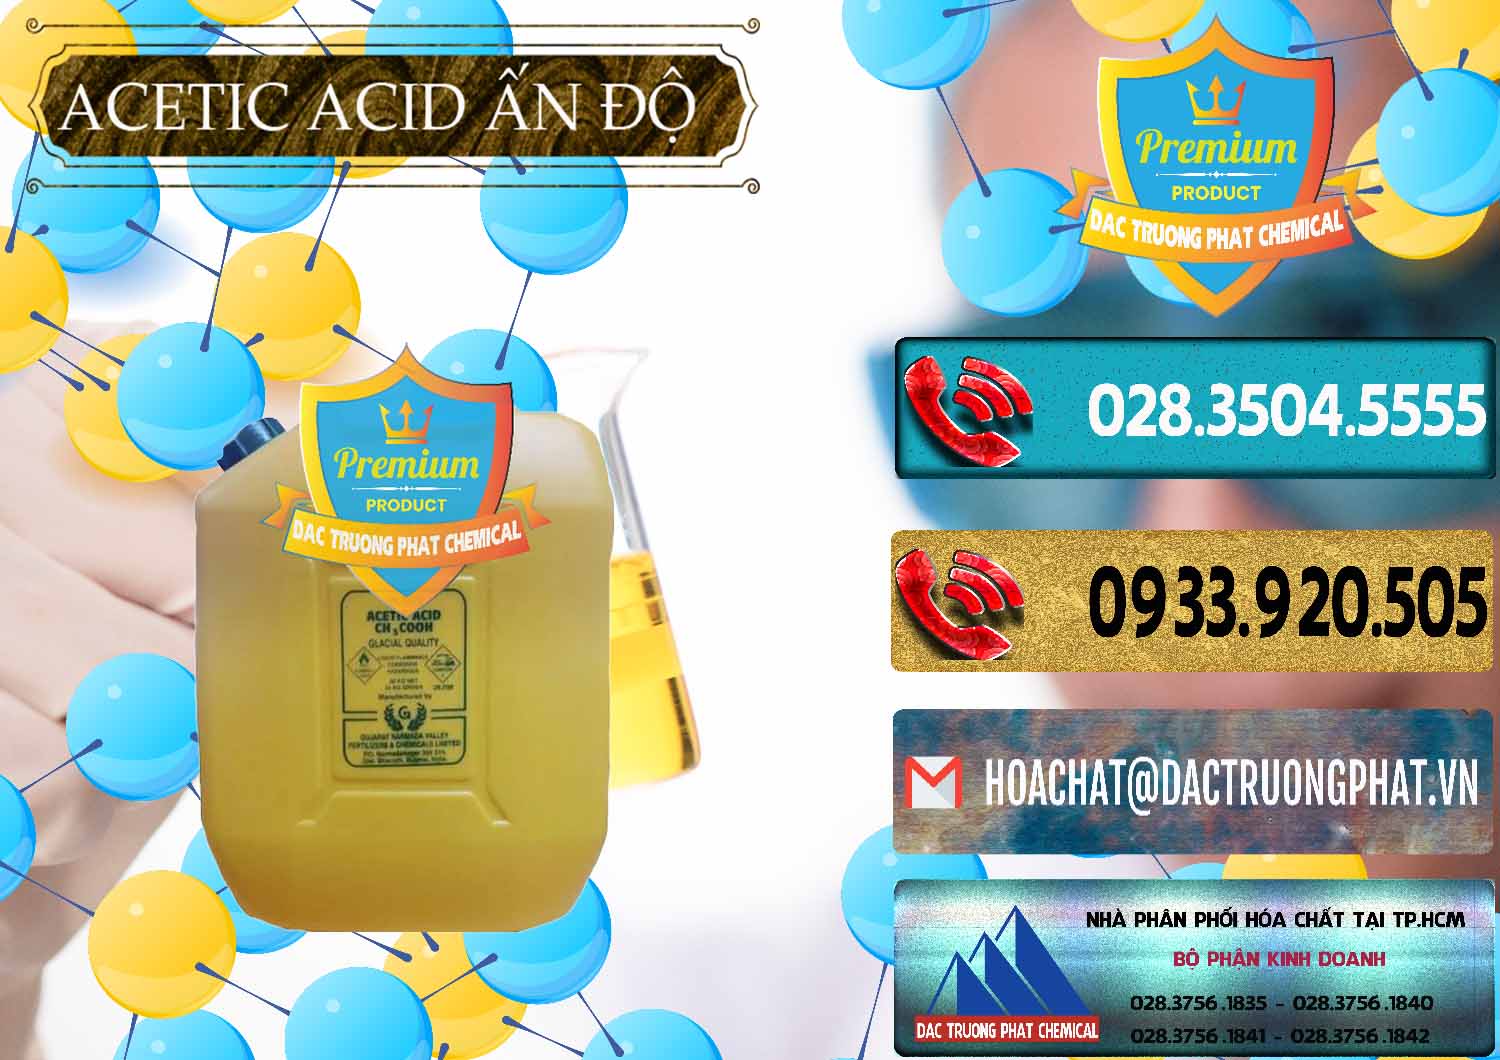 Nơi kinh doanh và bán Acetic Acid – Axit Acetic Ấn Độ India - 0359 - Cung cấp _ bán hóa chất tại TP.HCM - hoachatdetnhuom.com